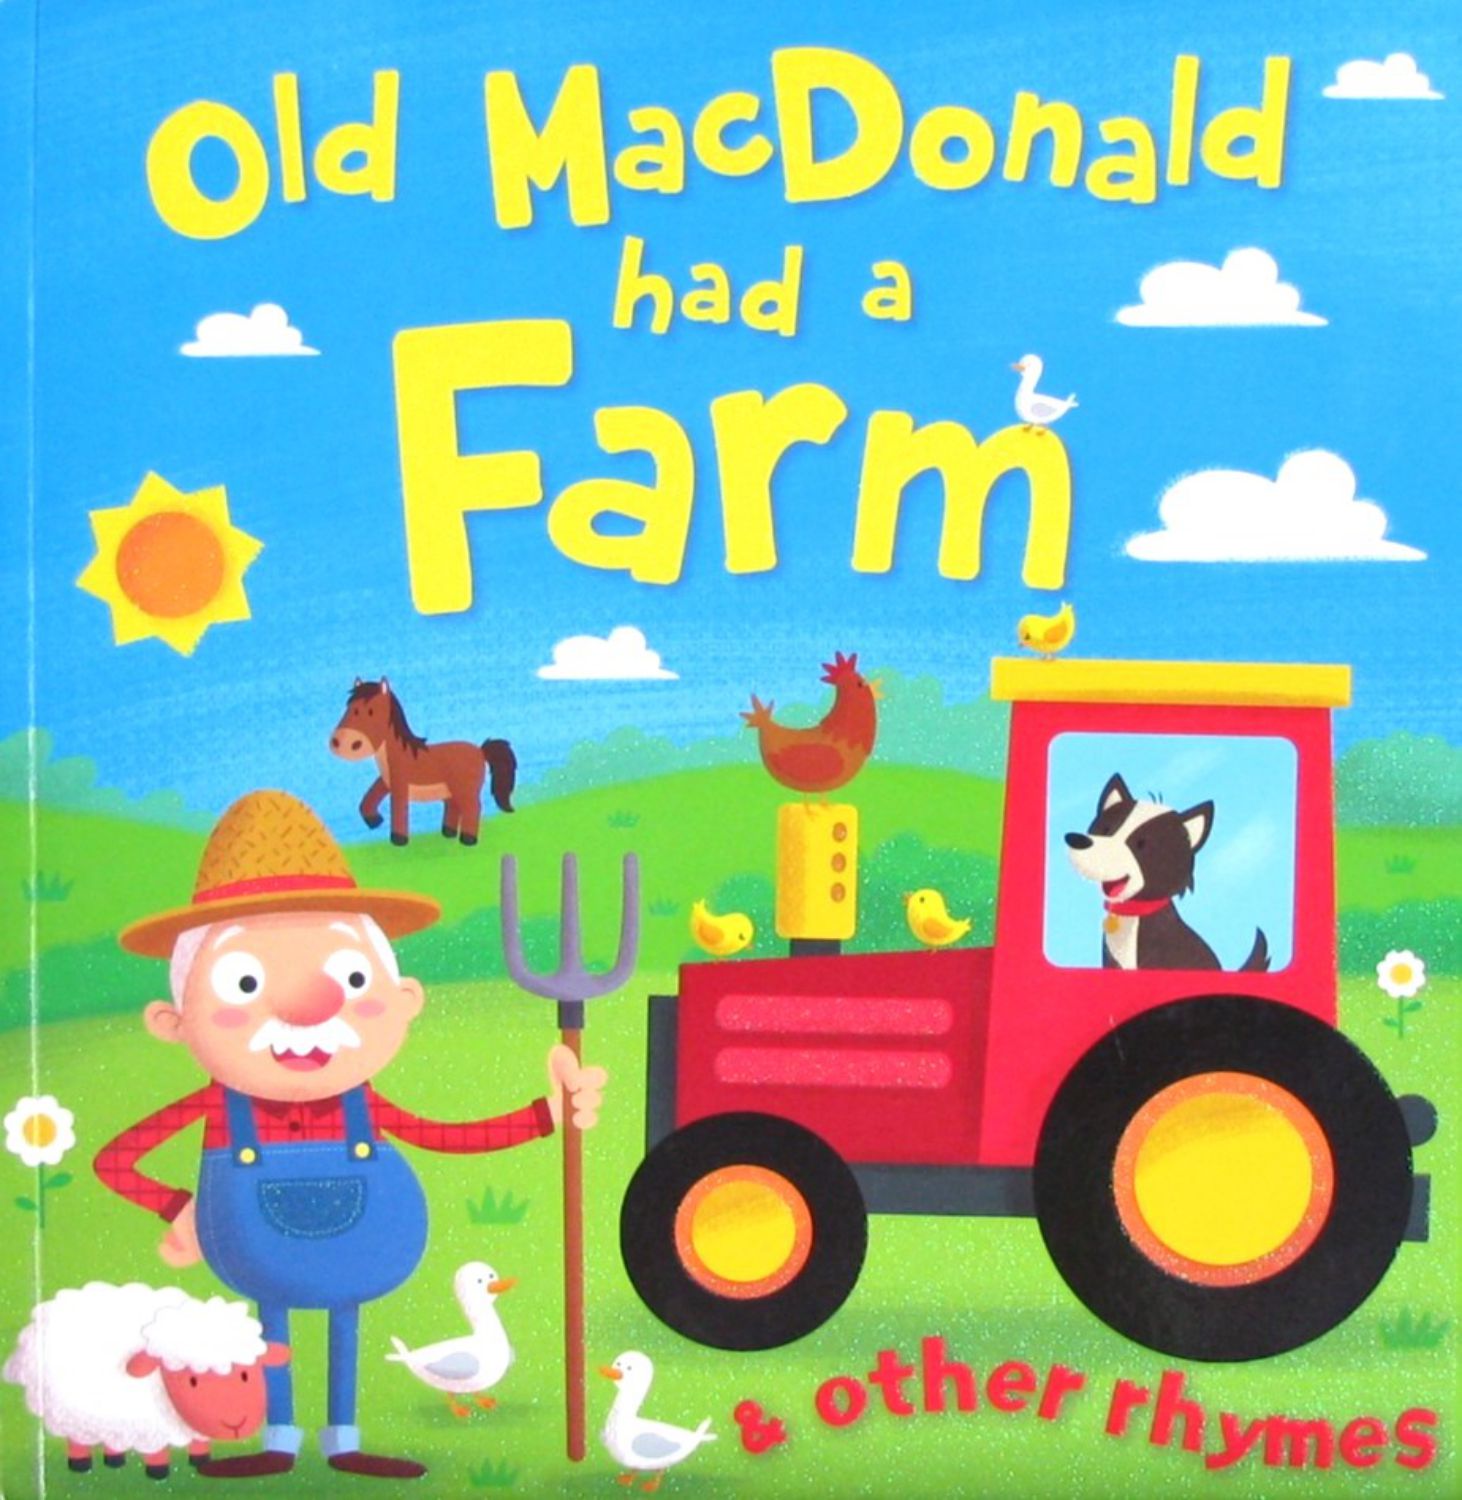 教育相关 old macdonald had a farm and other rhymes  (机器翻译:老